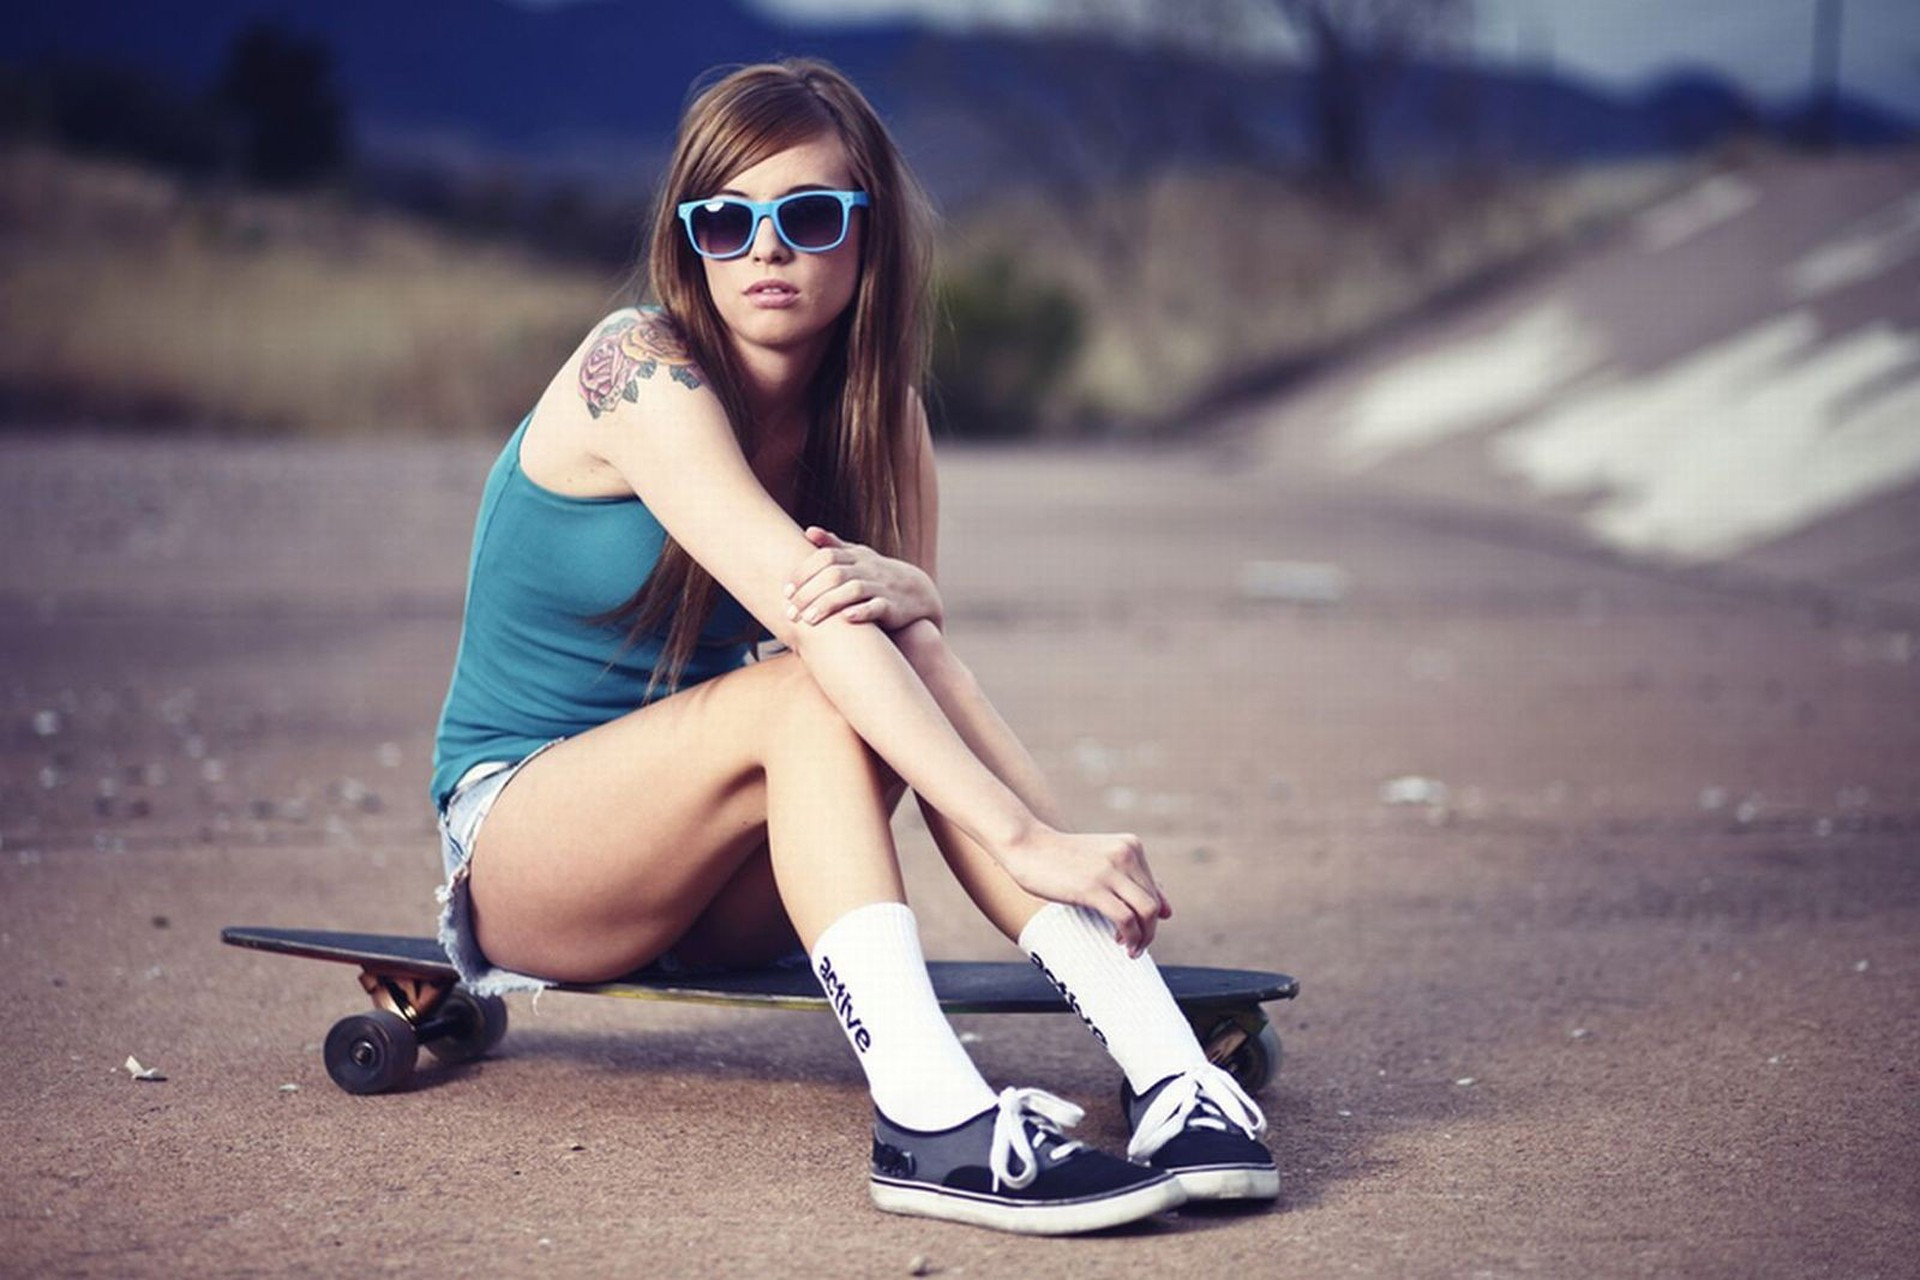 … Girl With Skateboard Girl Girls Skateboarding Image Awesome Girls  Skateboarding Photo …